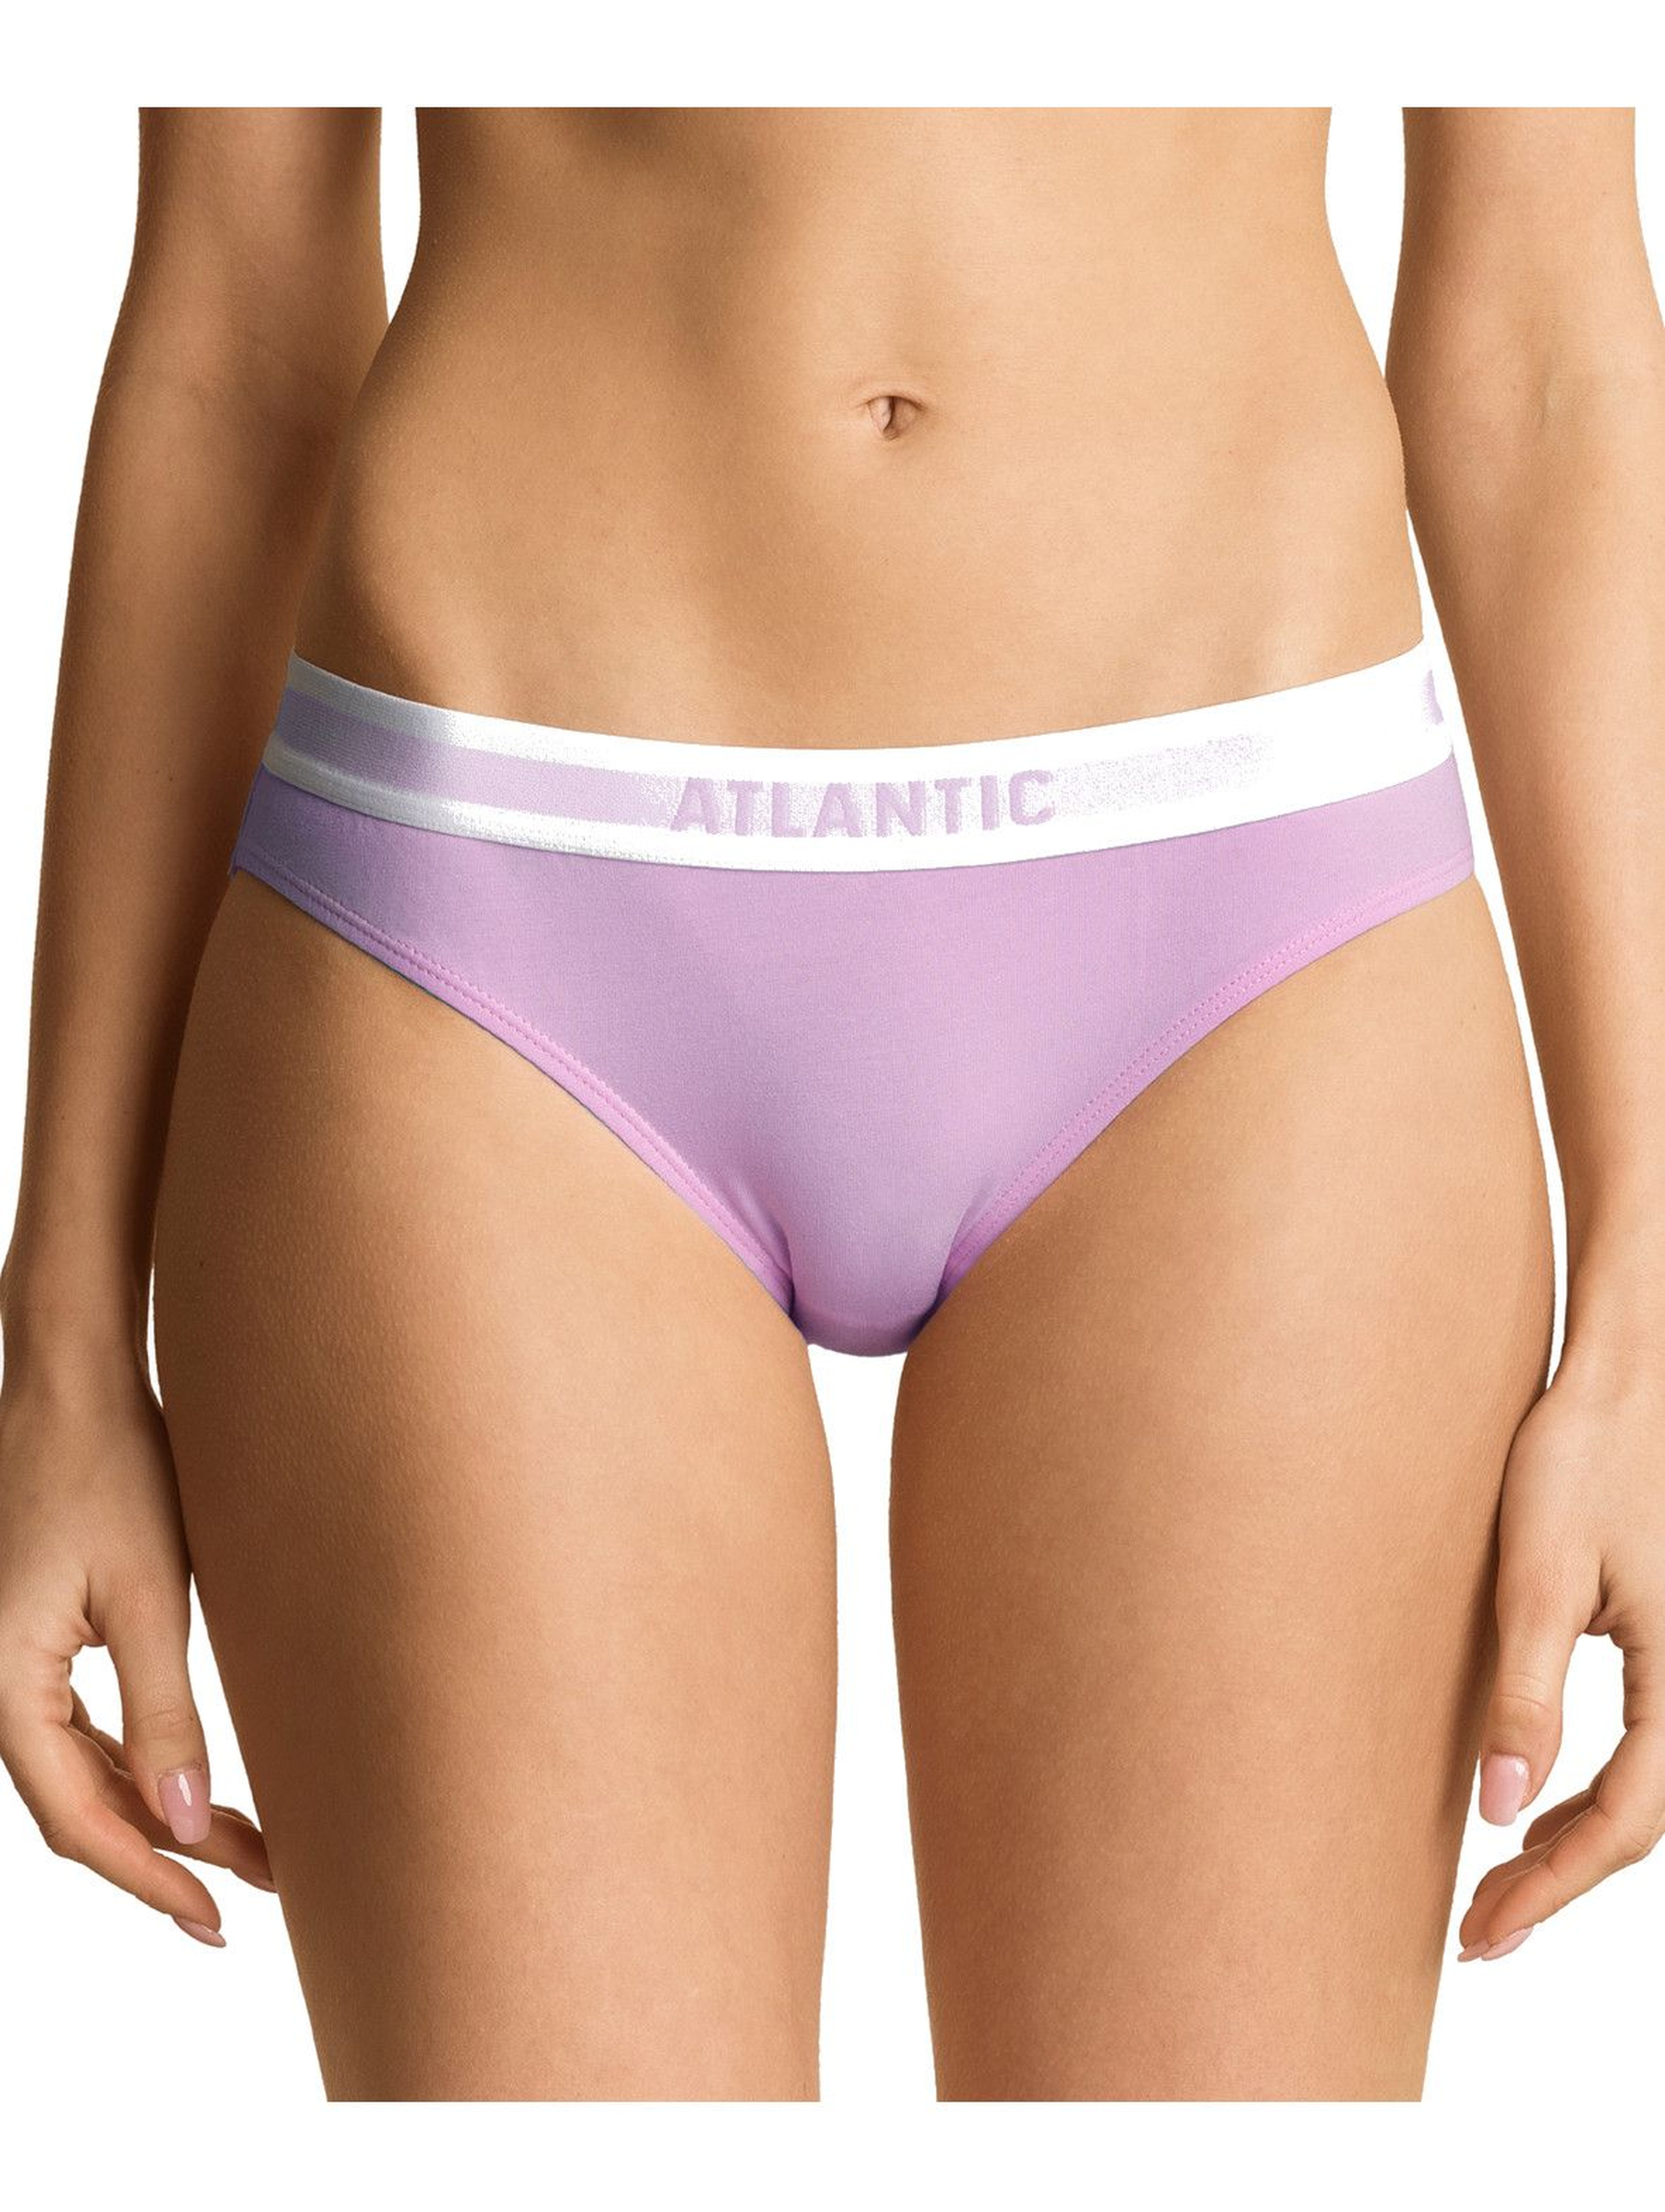 Figi damskie bikini Atlantic - różowe, zielone, czarne 3szt